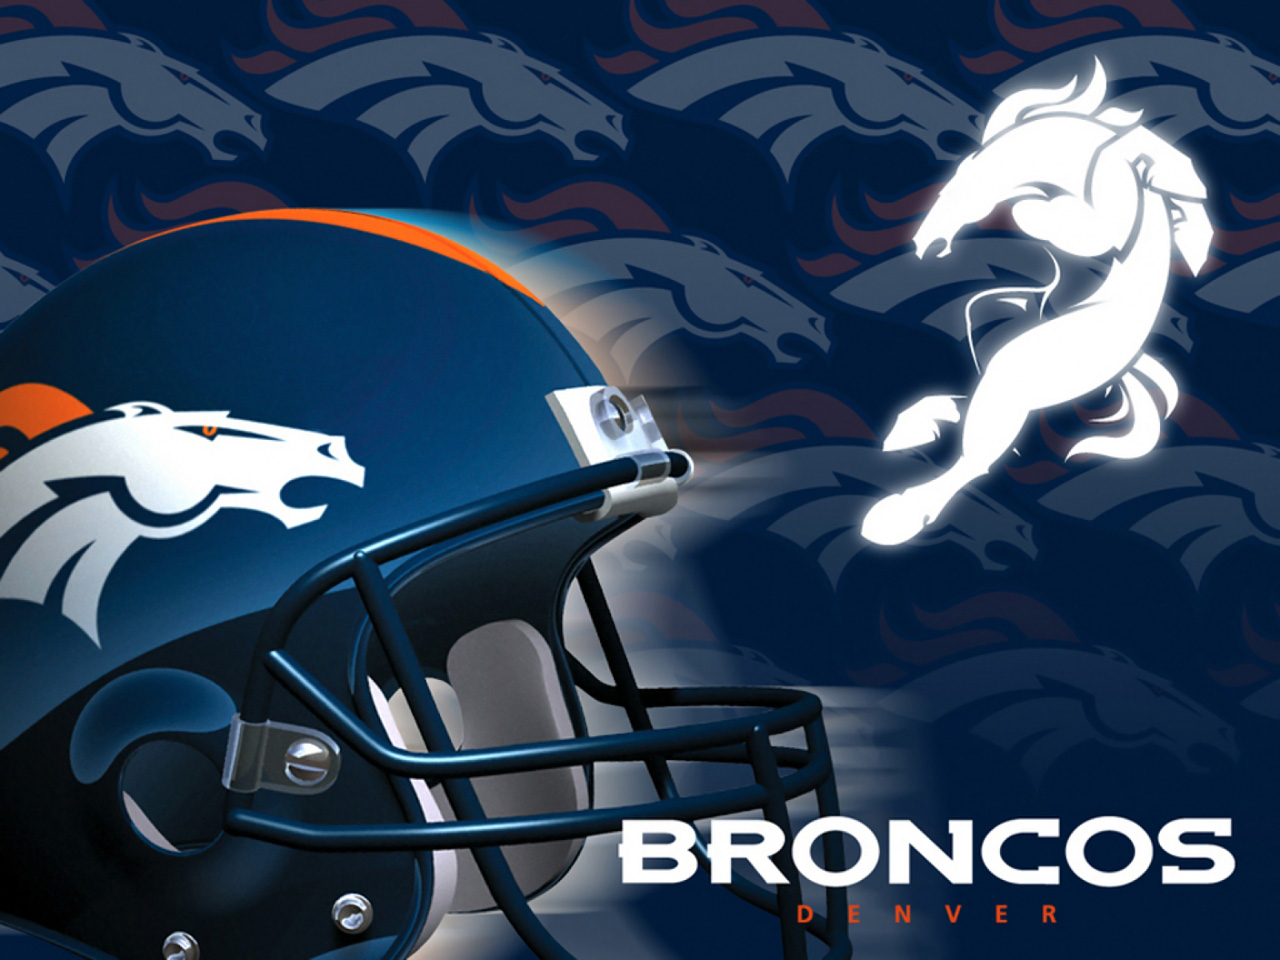 Free Denver Broncos Helmet , HD Wallpaper & Backgrounds